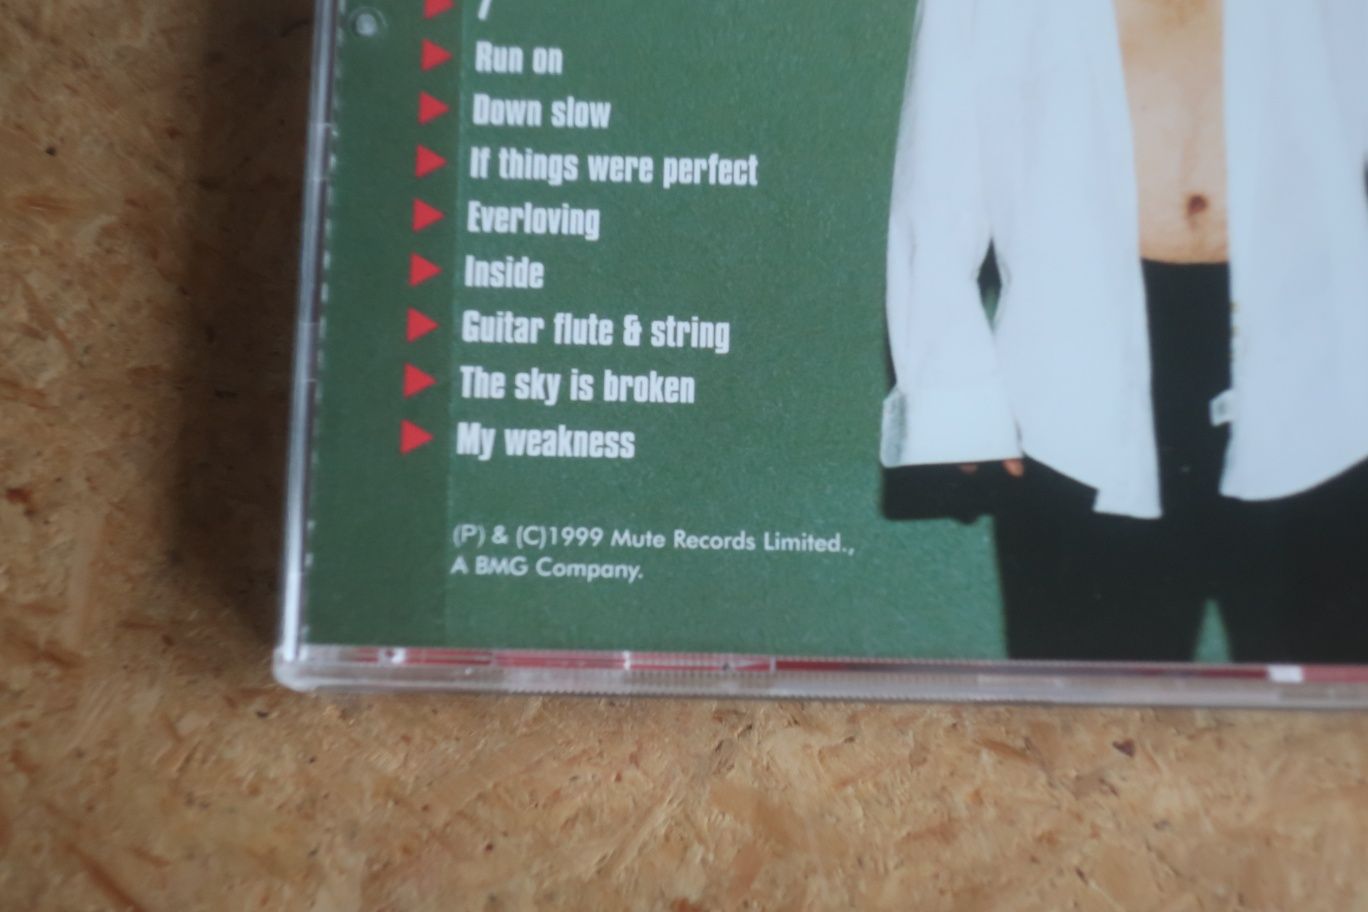 Moby - Play (1999, cd novo a estrear)